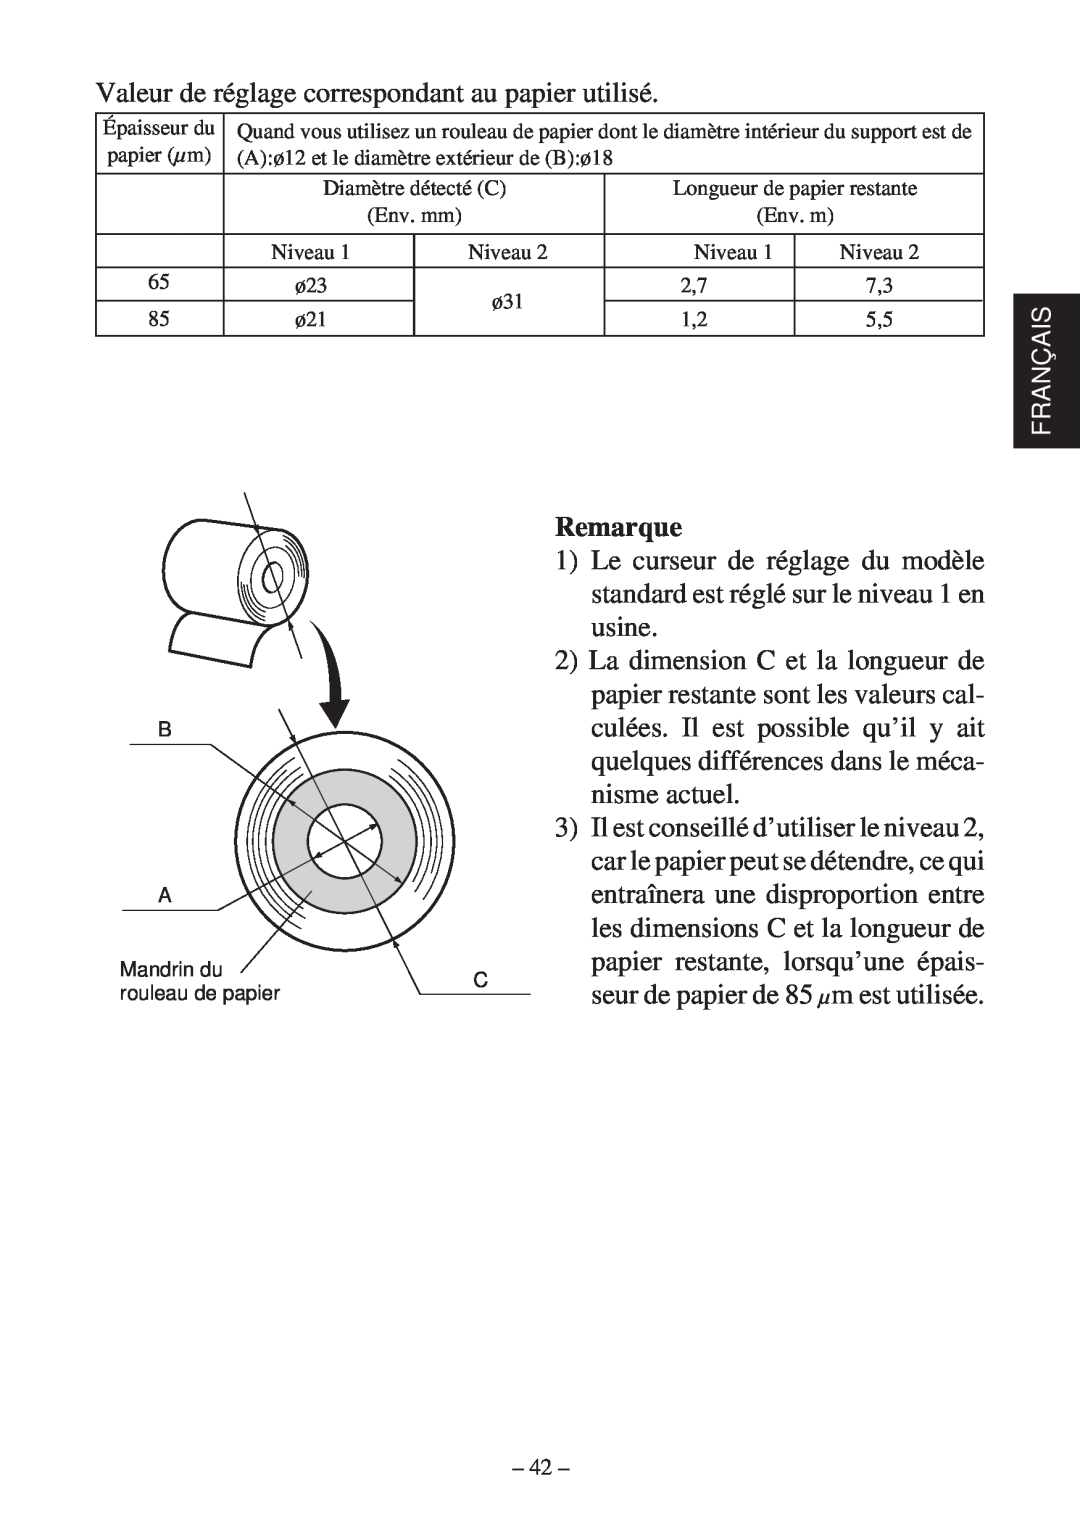 Star Micronics TSP600 user manual Valeur de réglage correspondant au papier utilisé, Remarque 